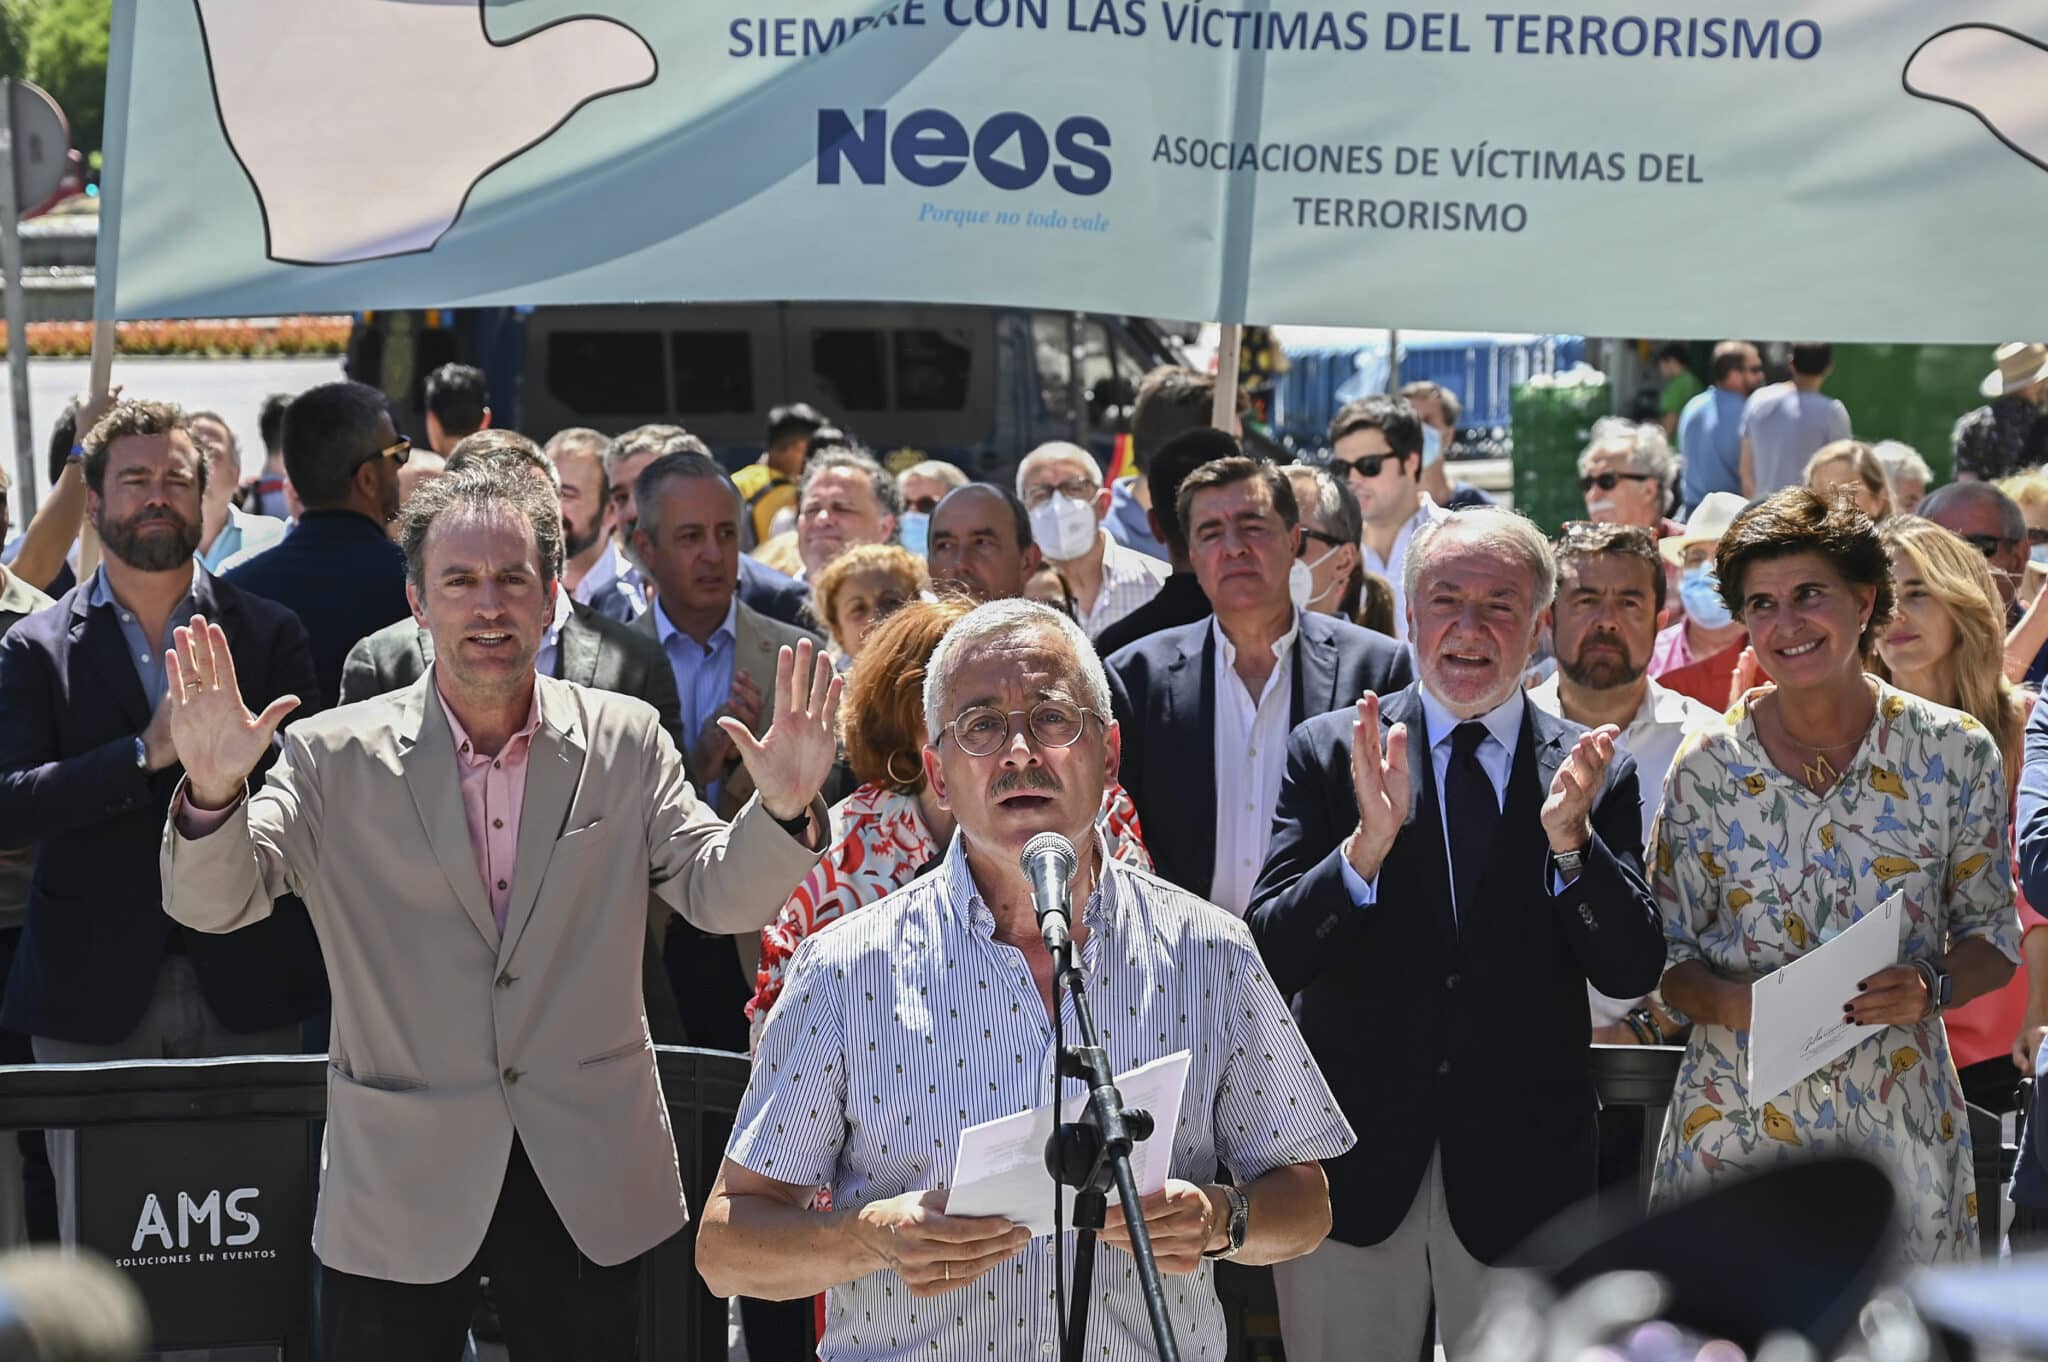 El exfuncionario de prisiones que fue secuestrado por ETA, Ortega Lara (c) lee un comunicado junto a los dirigentes del Partido Popular vasco, María San Gil (d) y Jaime Mayor Oreja (2d) frente al Congreso